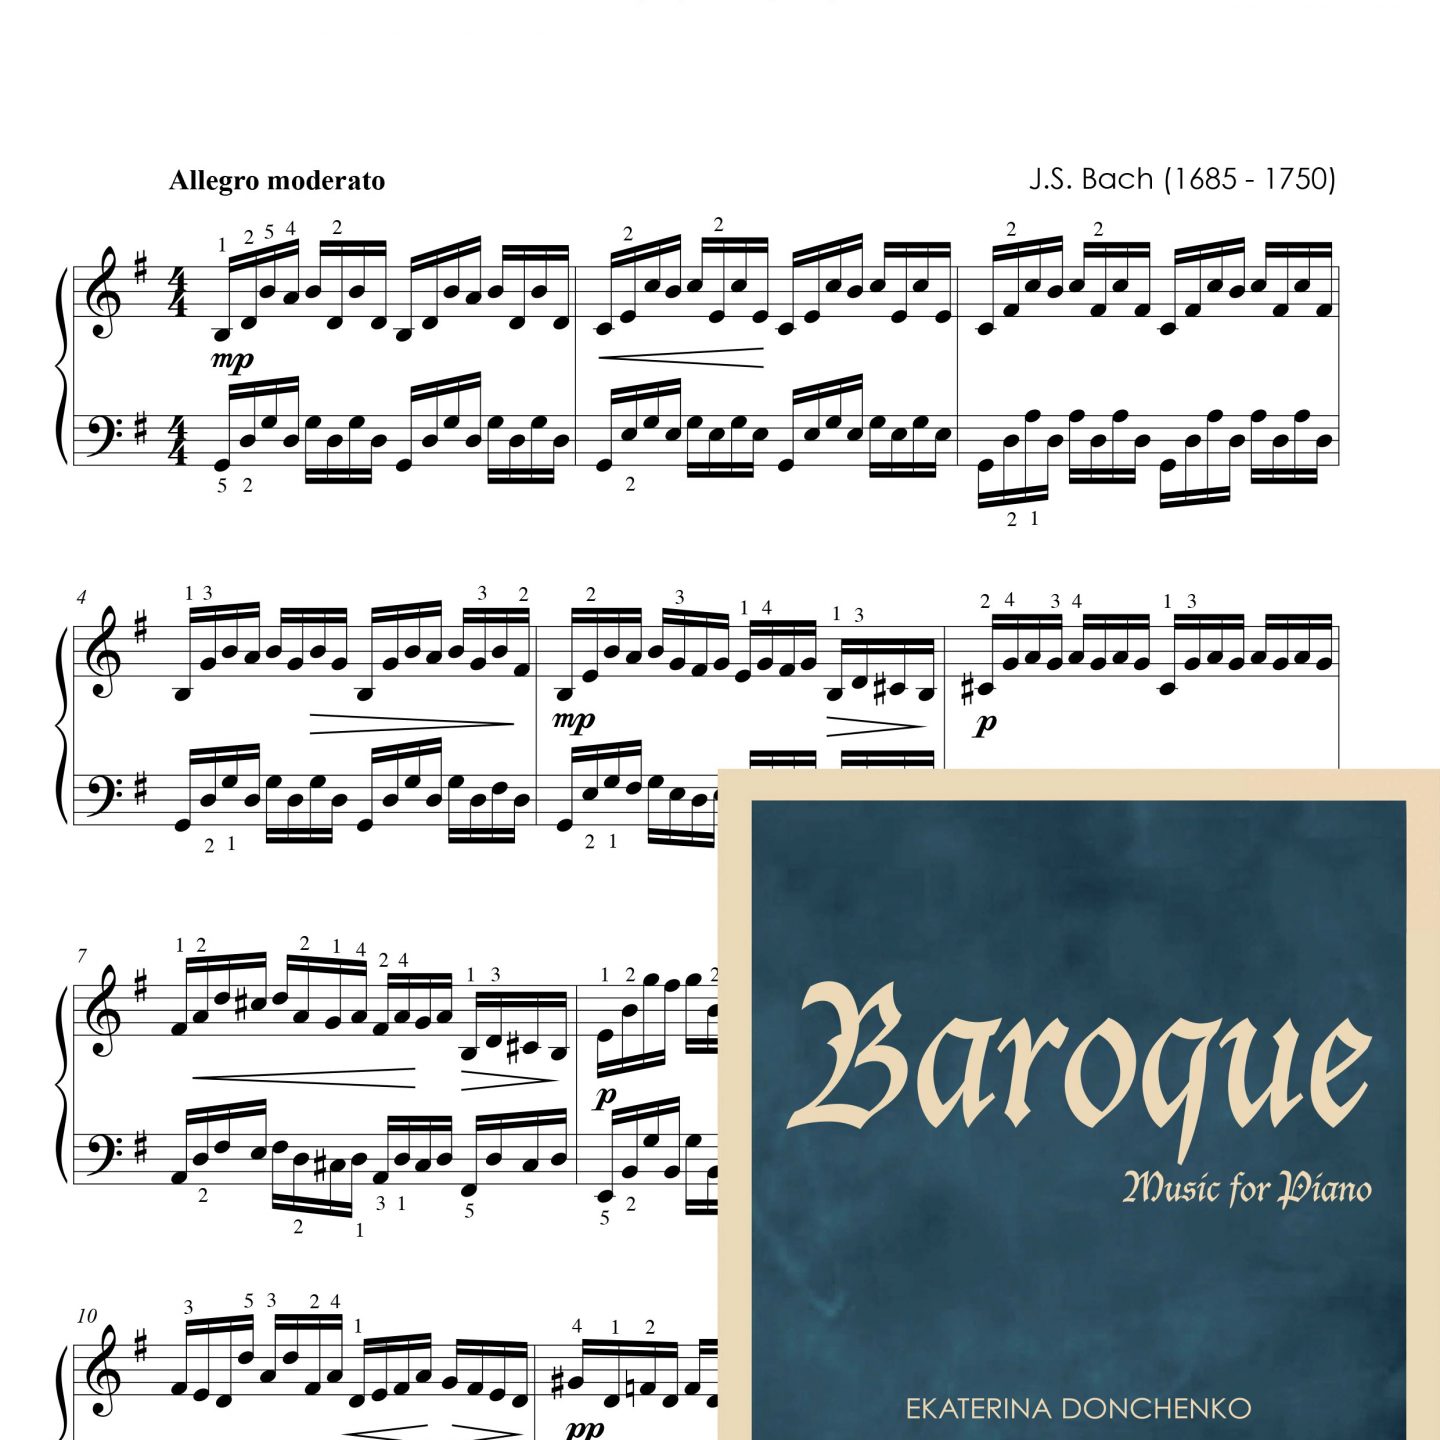 И.С.Бах – ПРЕЛЮДИЯ*- Сюита Nº1 для виолончели (BWV 1007), транскрипция для фортепиано